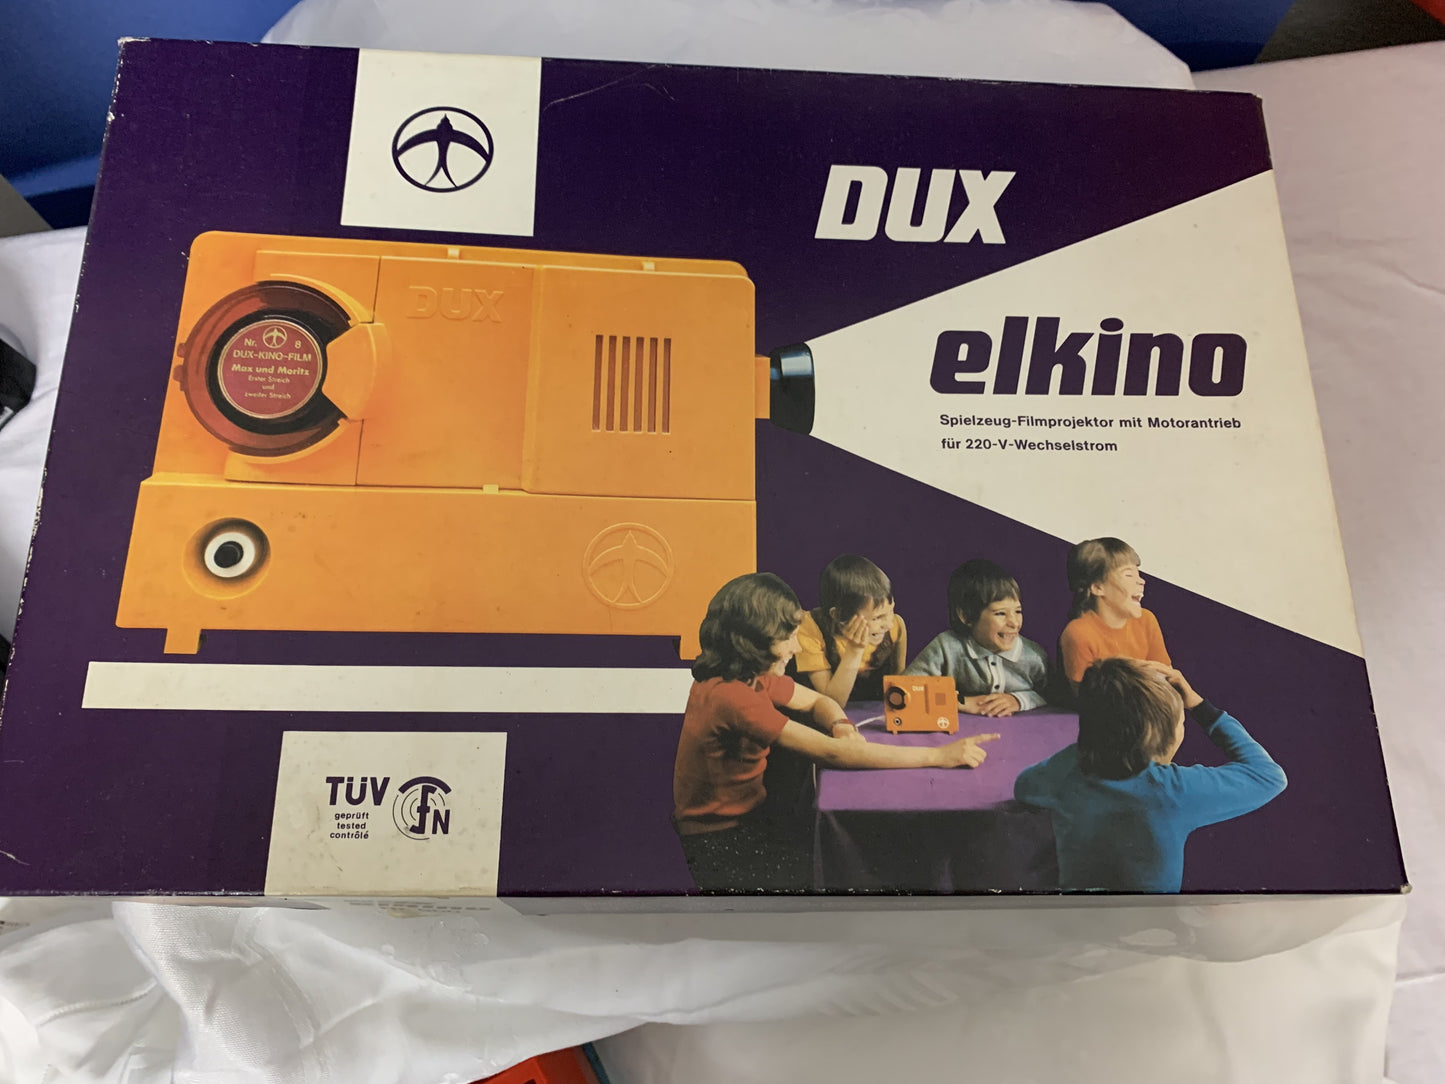 Dux Elkino Nr. 900